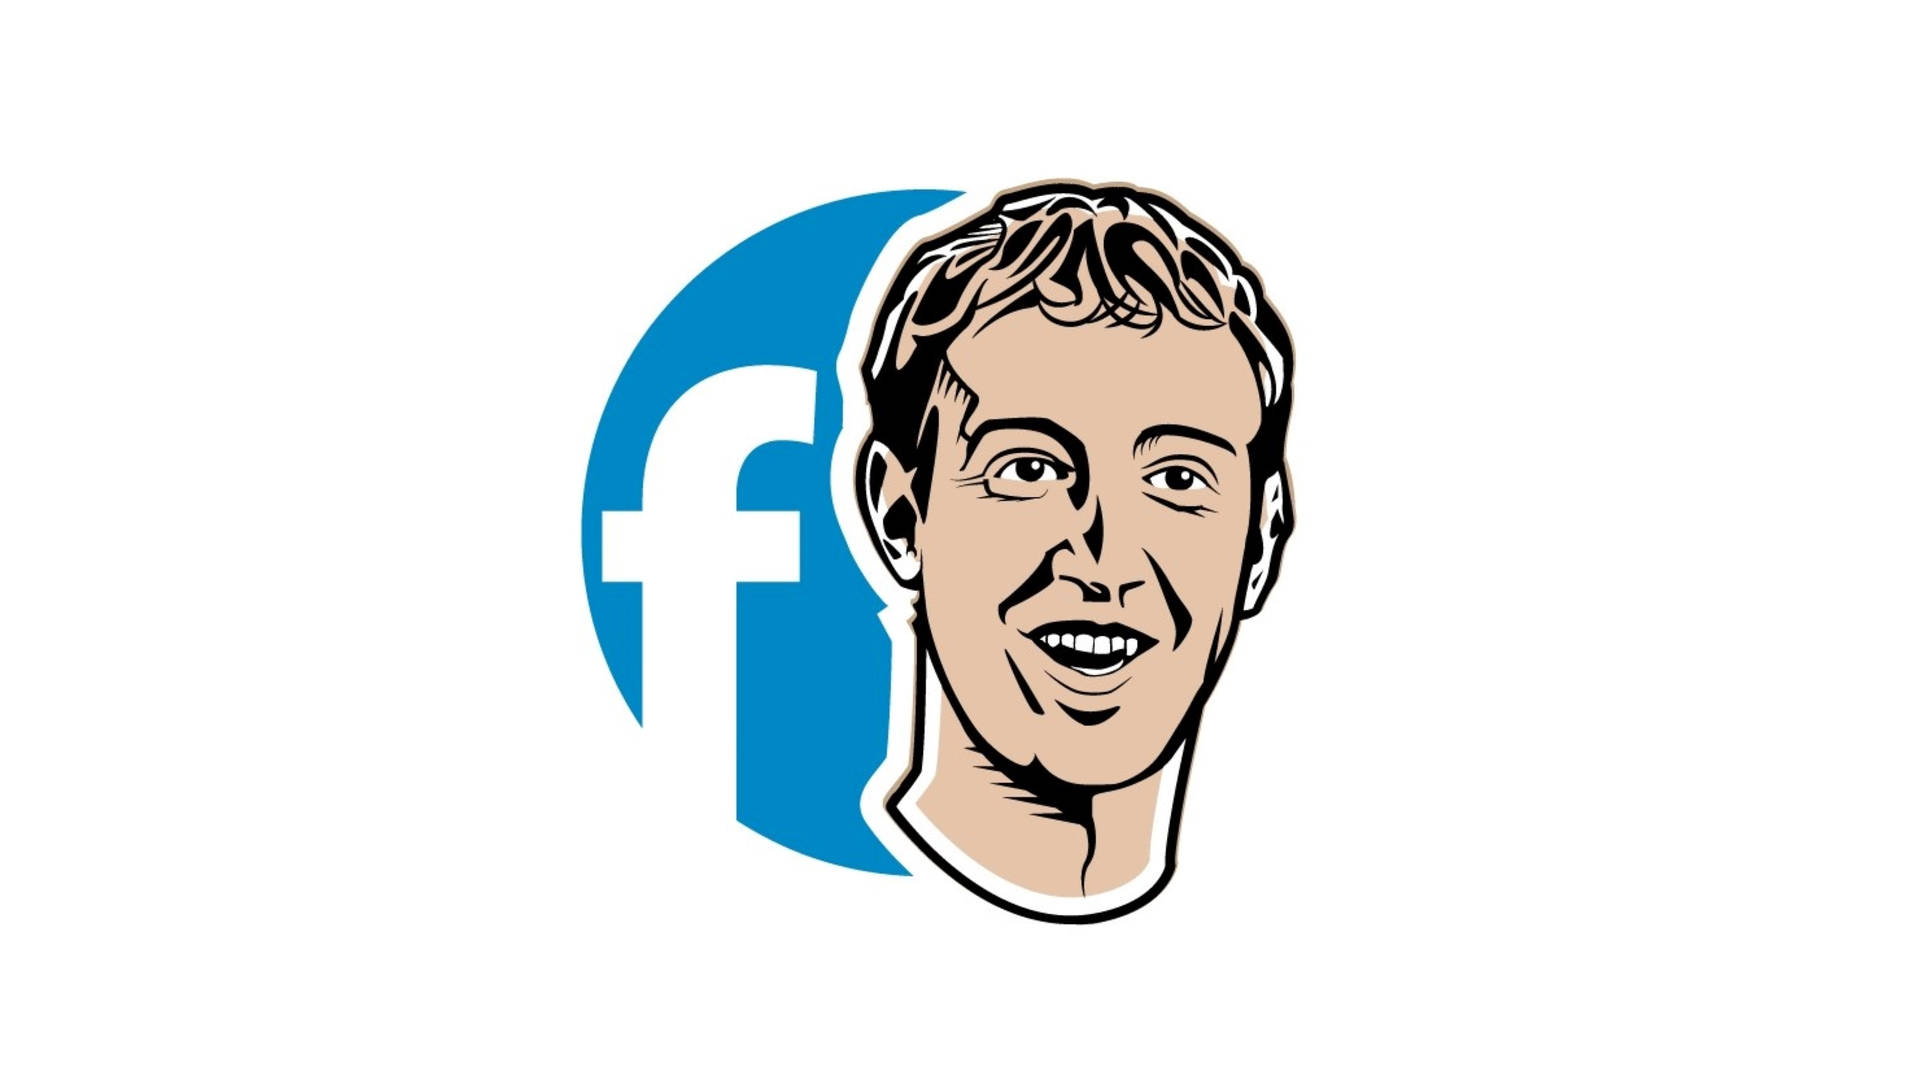 Facebookmark Zuckerberg-konst På Dator- Eller Mobilskärmen. Wallpaper